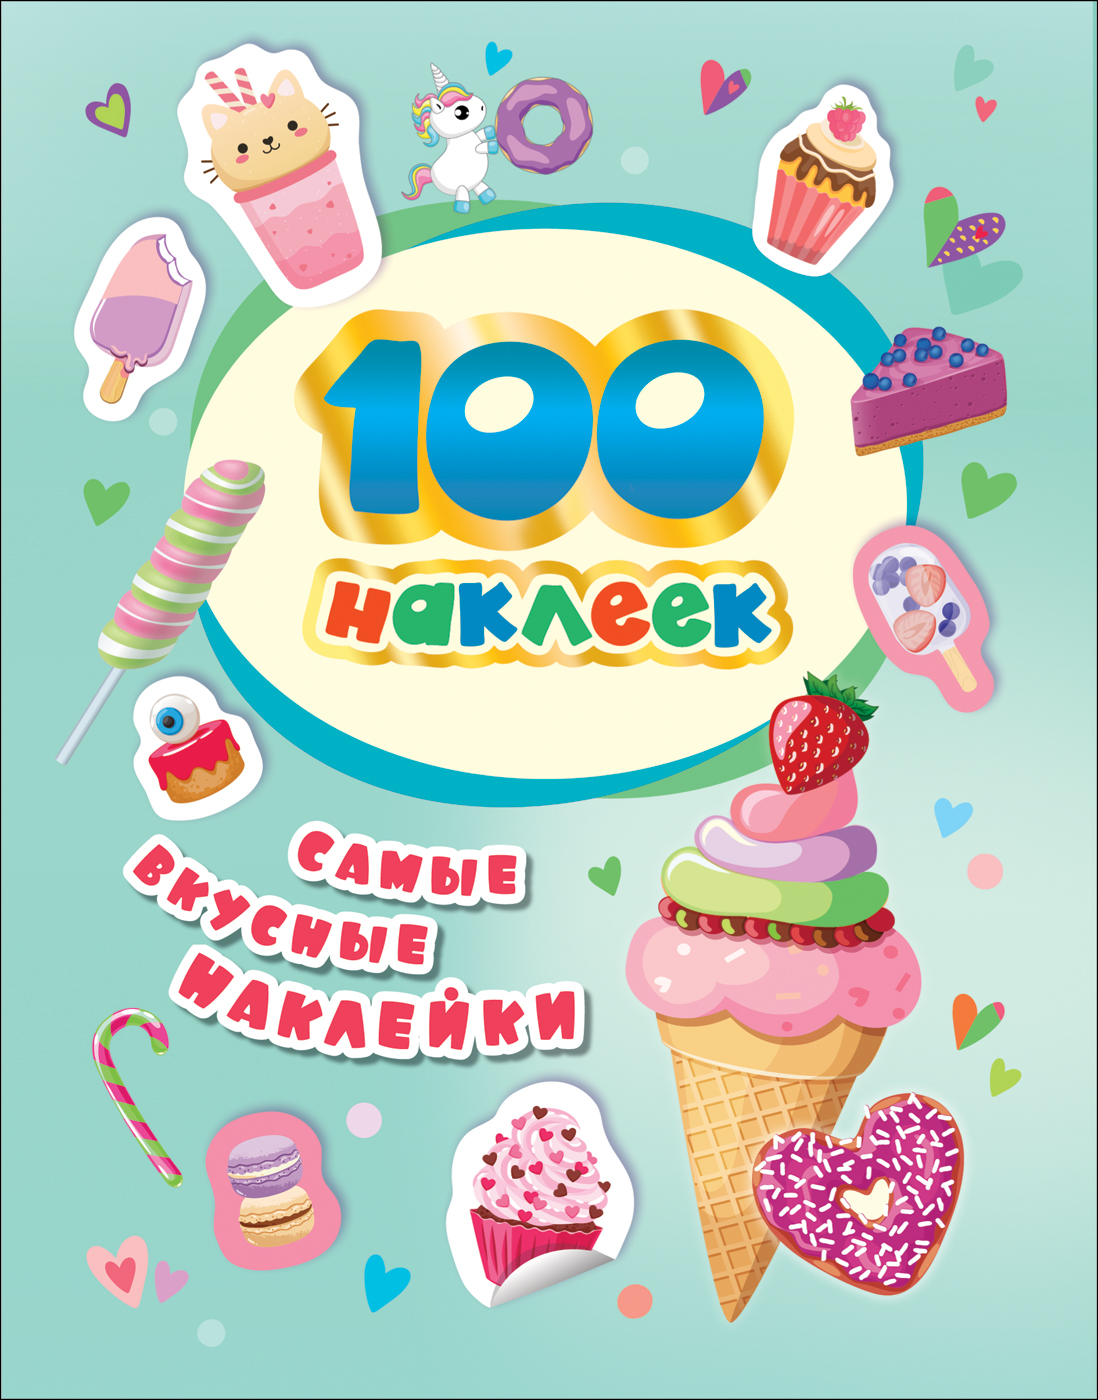 100 Наклеек 37302 Самые вкусные наклейки Росмэн - Пермь 